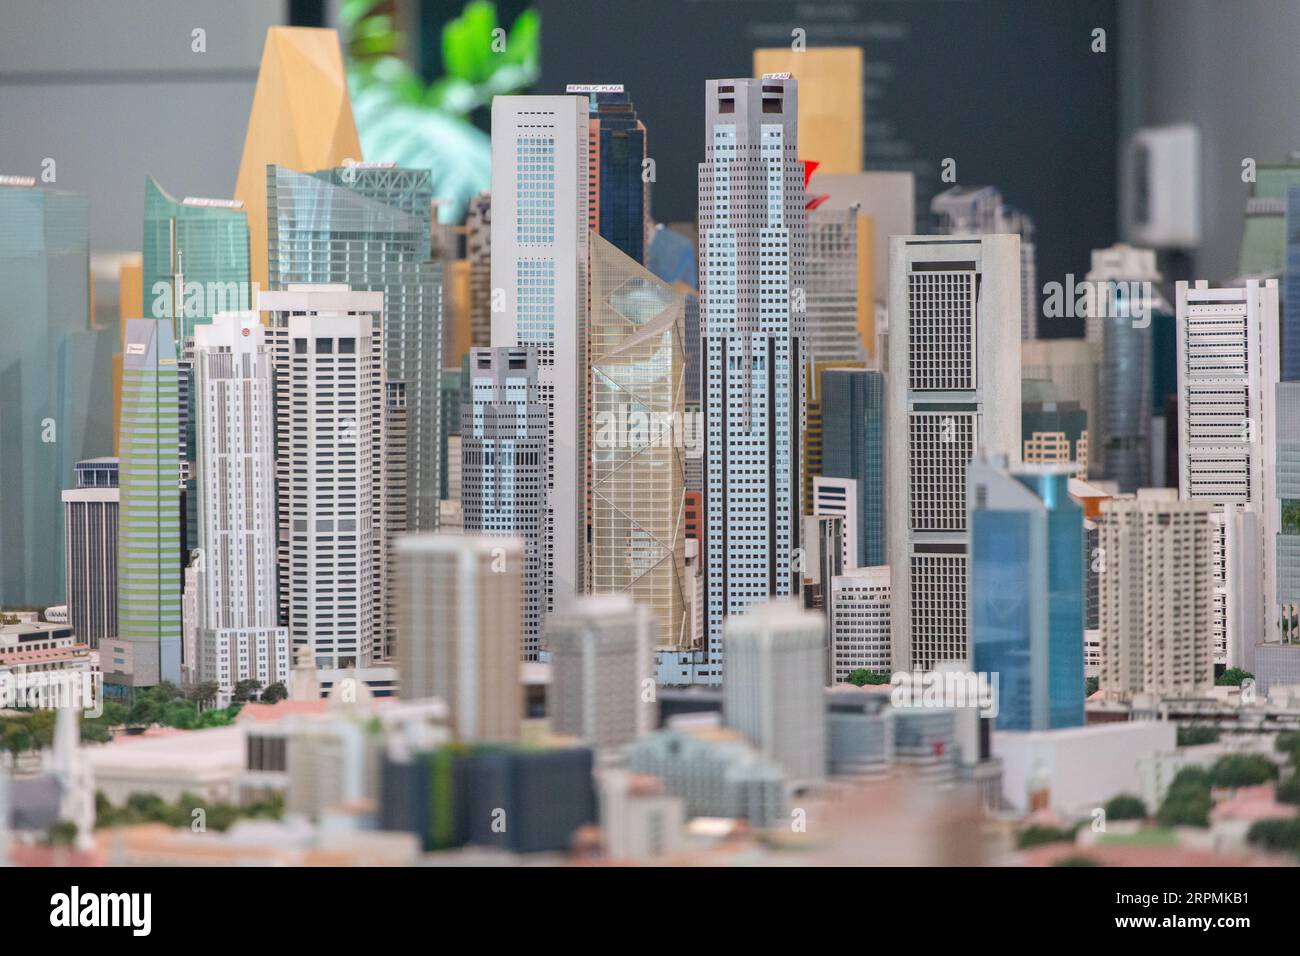 Modelli 3D dei grattacieli di Singapore nel quartiere centrale degli affari, una dimostrazione dell'evoluzione della pianificazione urbana nel corso dei decenni. Foto Stock